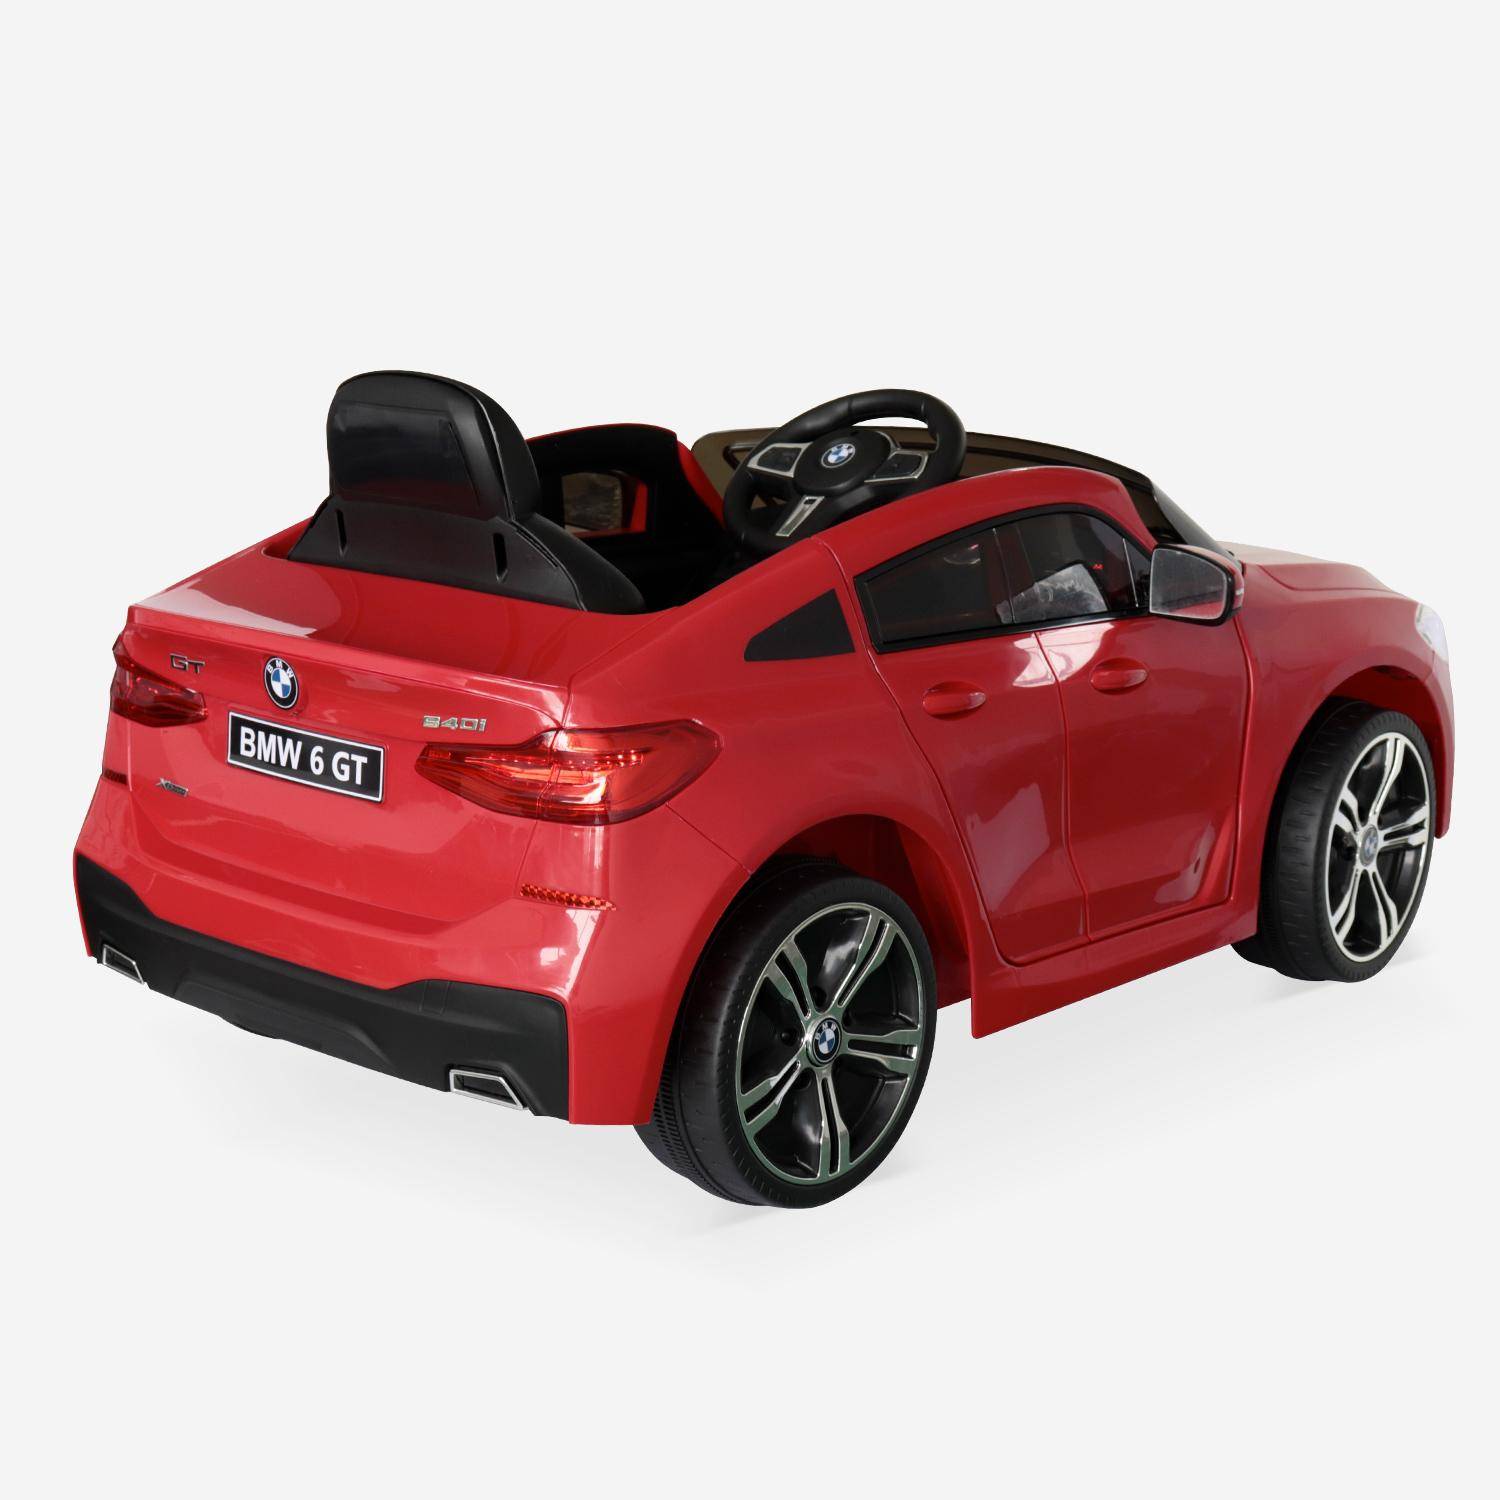 BMW Serie 6 GT Gran Turismo rossa, macchina elettrica per bambini 12V 4 Ah, 1 posto, con autoradio e telecomando Photo3